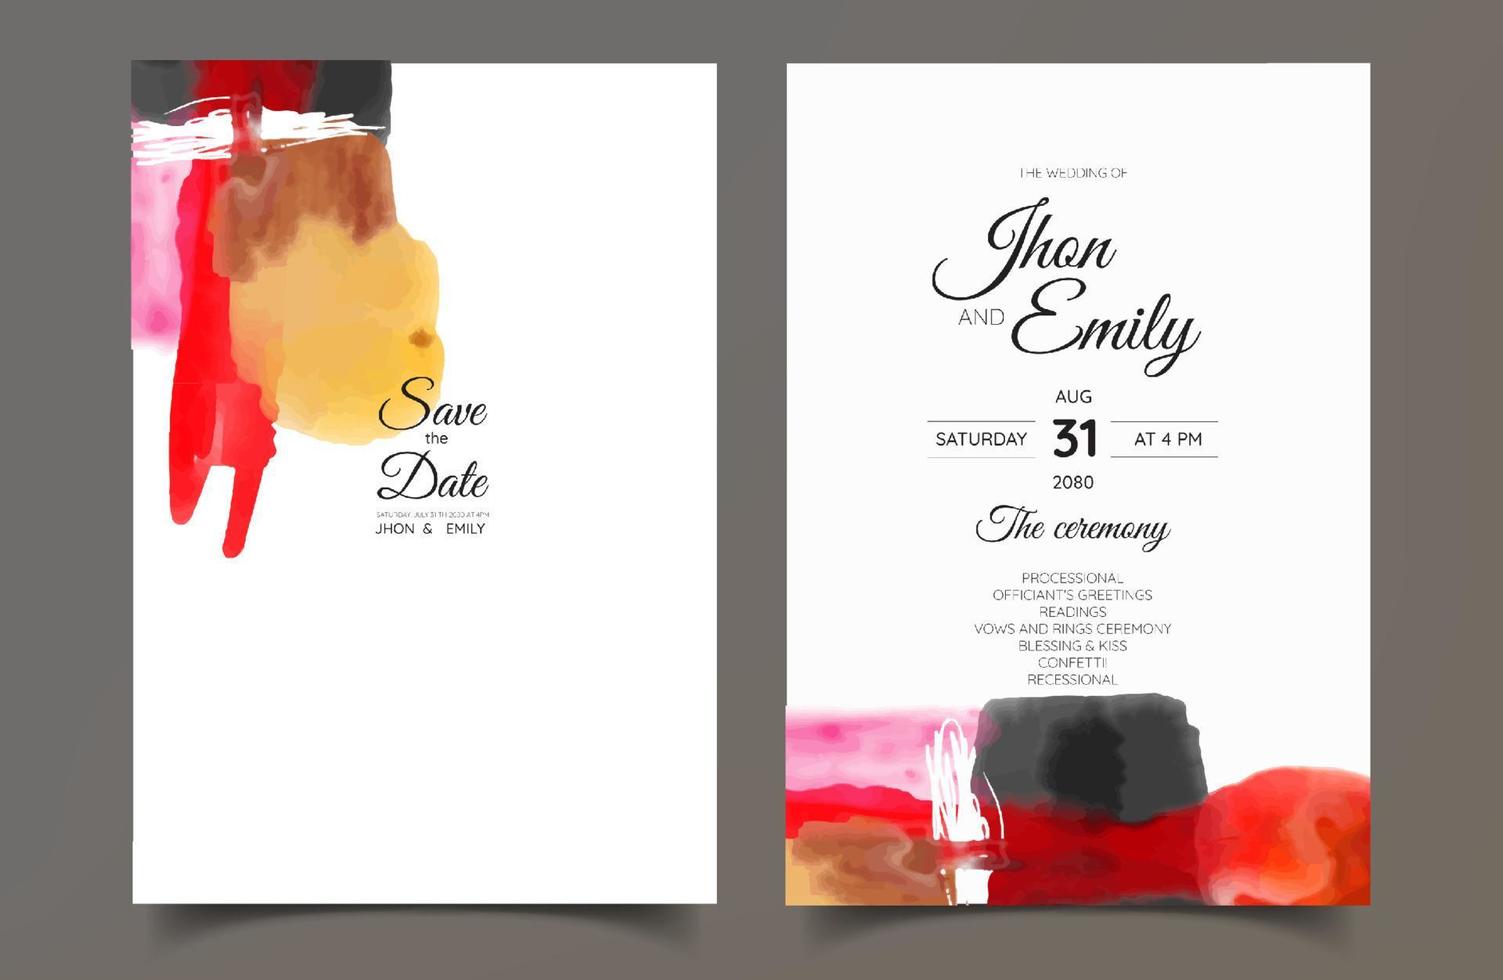 abstrato minimalista pintado à mão para um convite de casamento, cartão postal ou design de capa de brochura vetor